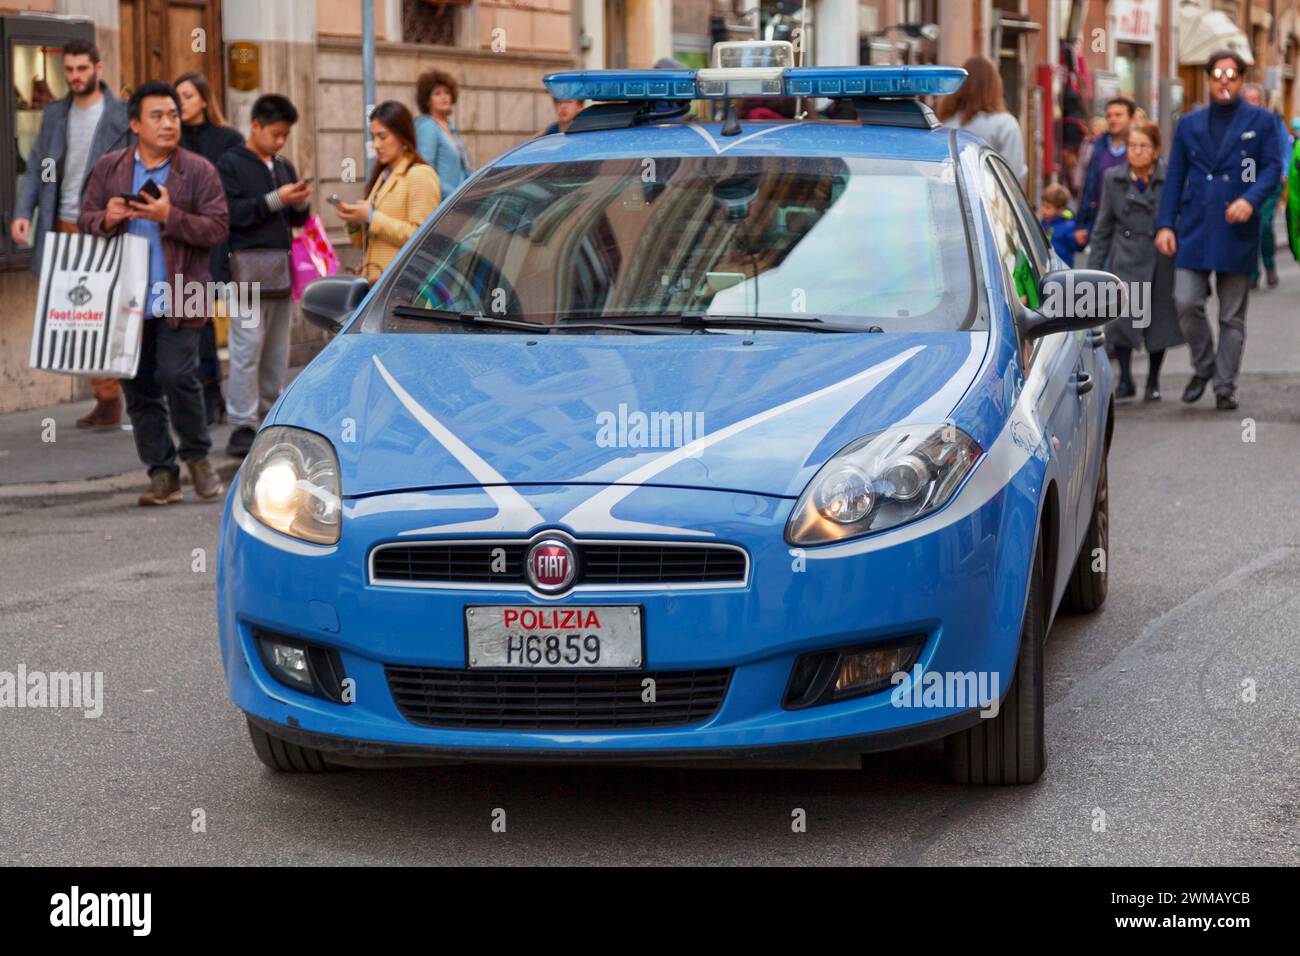 Rome, Italie - Mars 17 2018 : une voiture de police de la Squadra volante de la 'Polizia', garée dans une rue de Rome. Banque D'Images